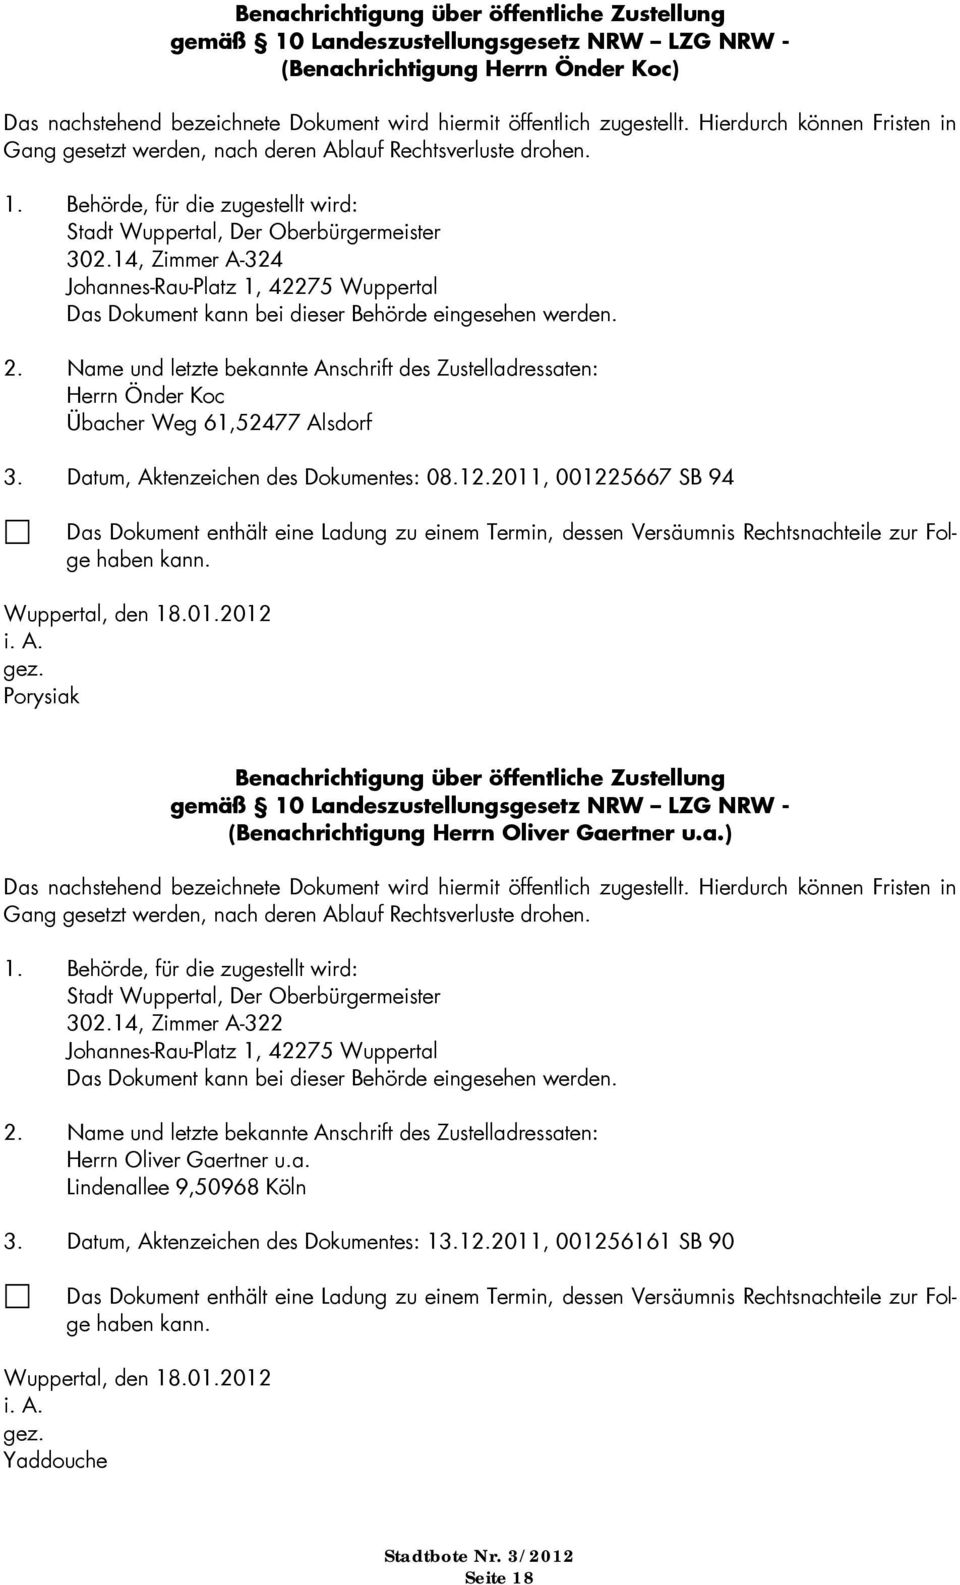 Offentliche Bekanntmachungen Der Stadt Wuppertal Pdf Free Download